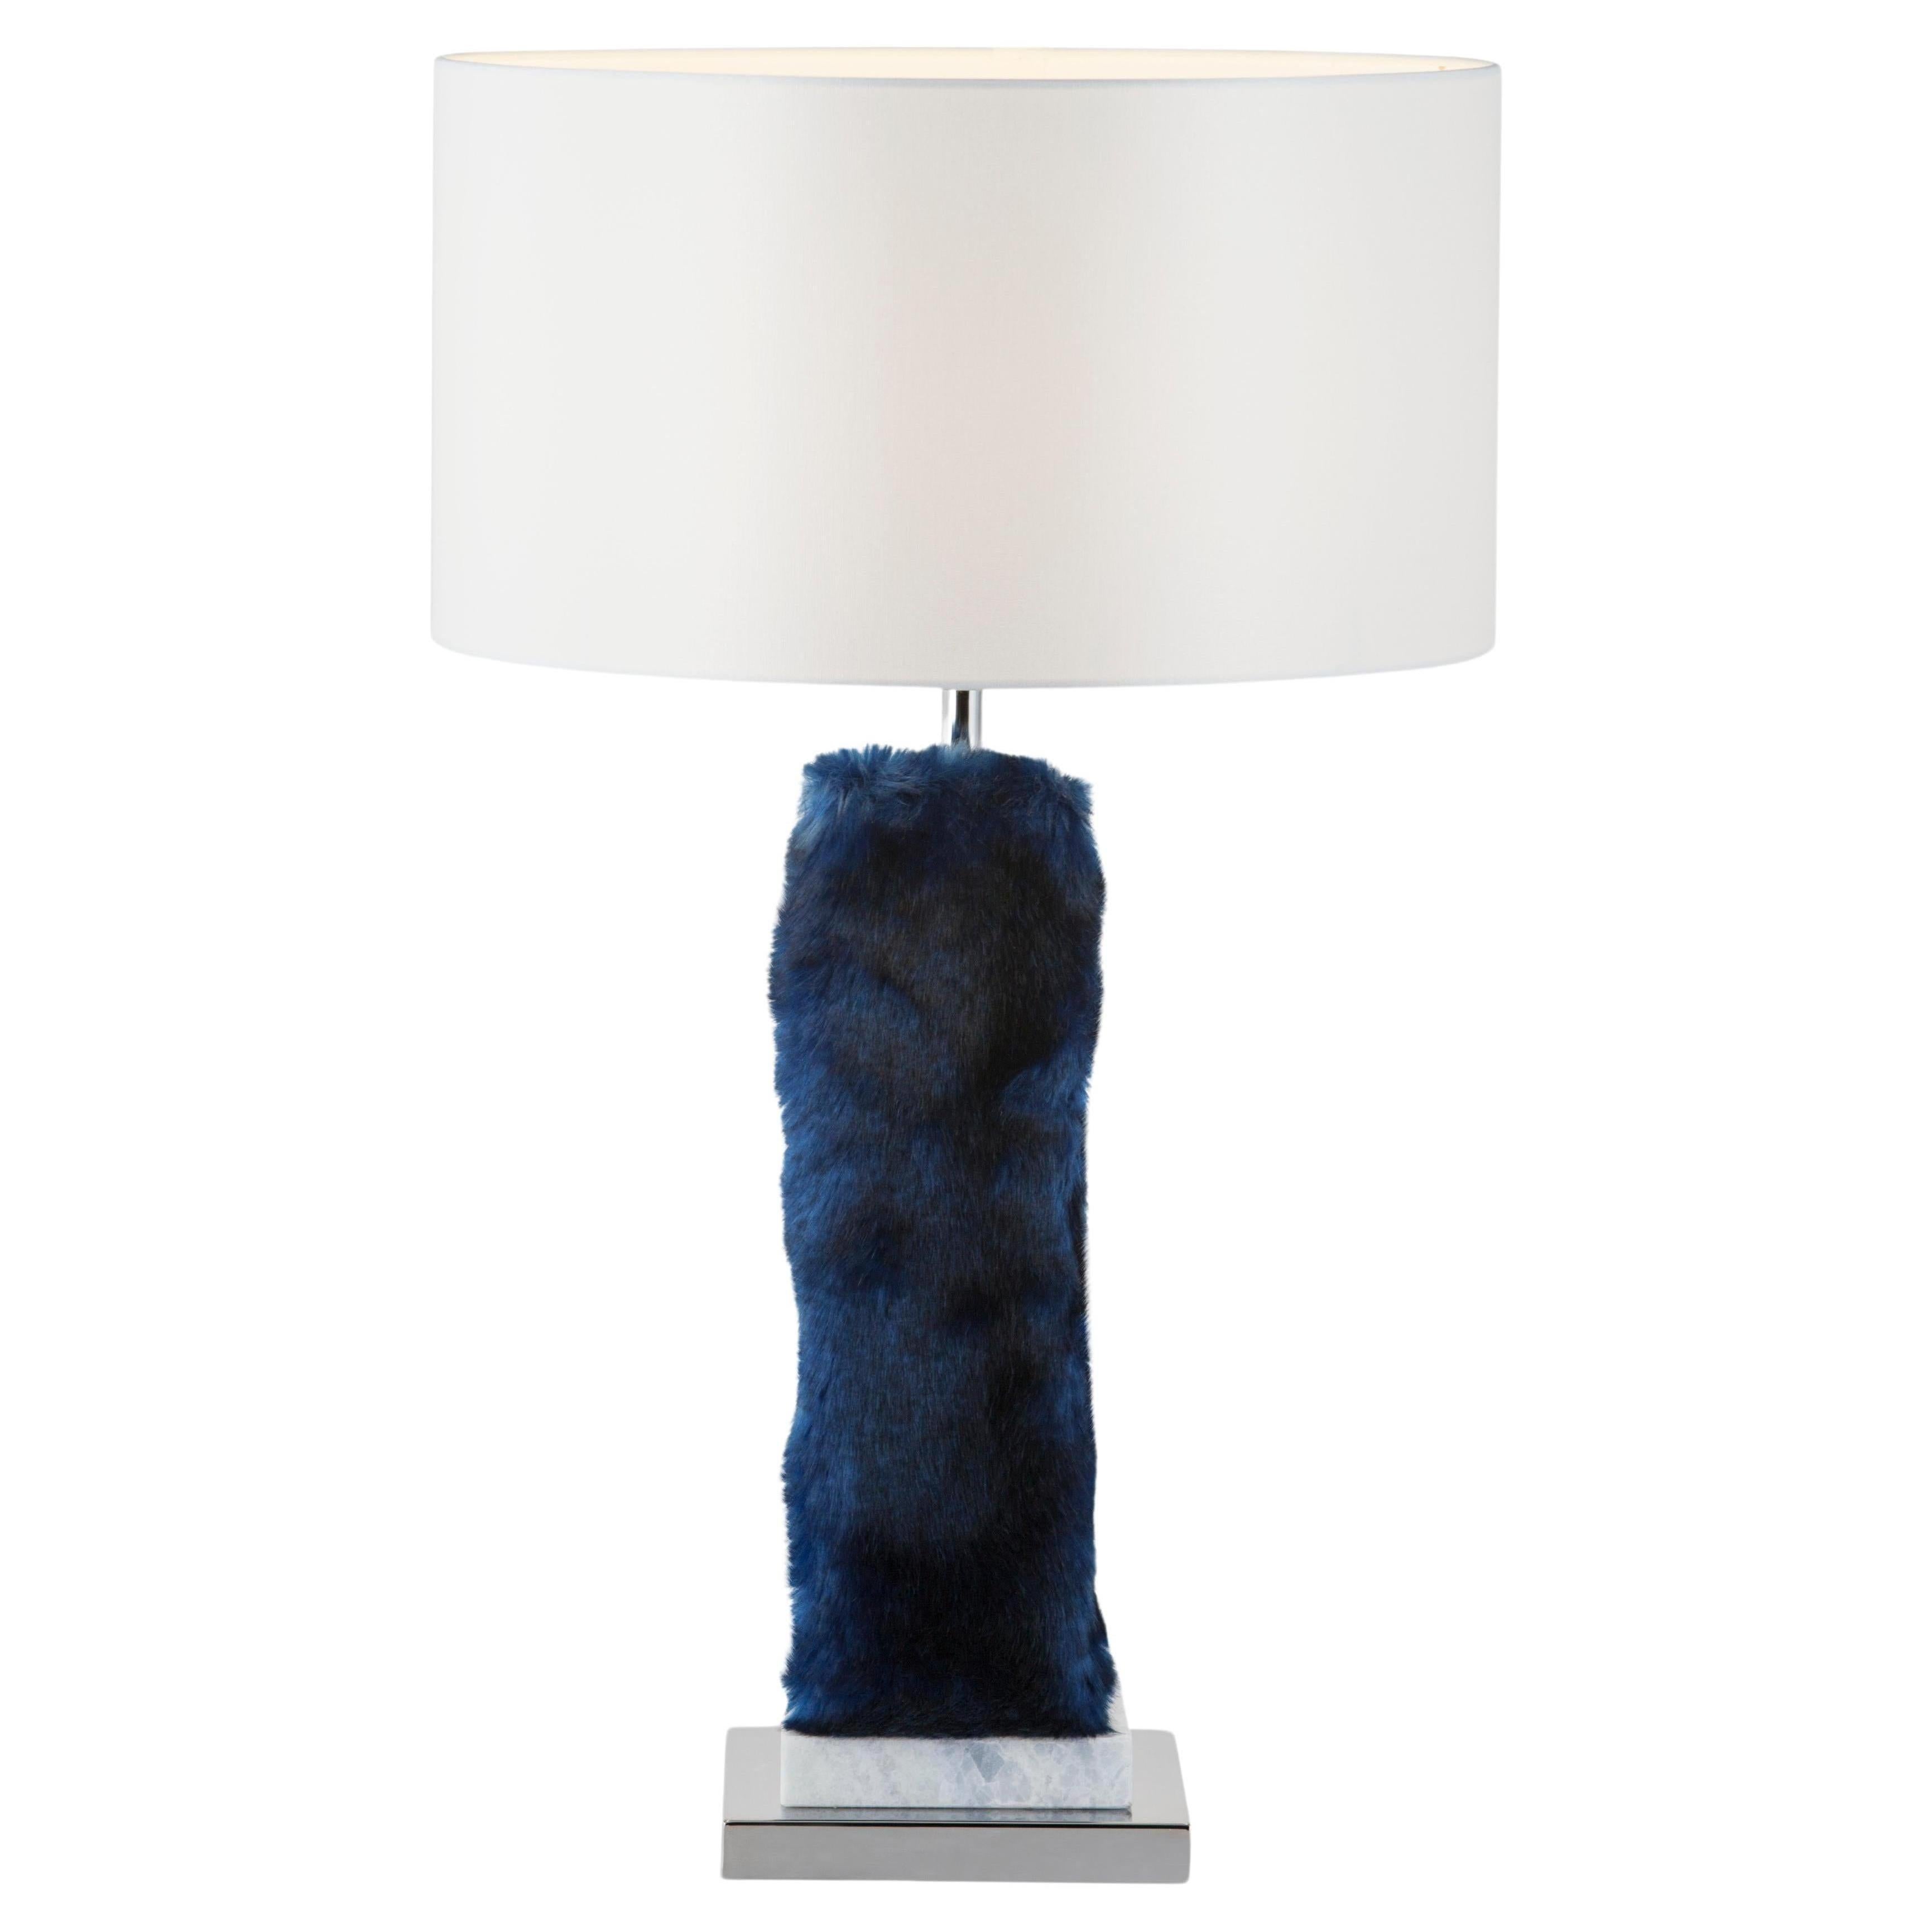 Satz von 2 Simões Tischlampen, moderne Kollektion, handgefertigt in Portugal - Europa von GF Modern.

Simões ist eine elegante Tischleuchte und eine attraktive Ergänzung für ein modernes Zuhause. Der blaue Kristallmarmor und der rostfreie Stahl